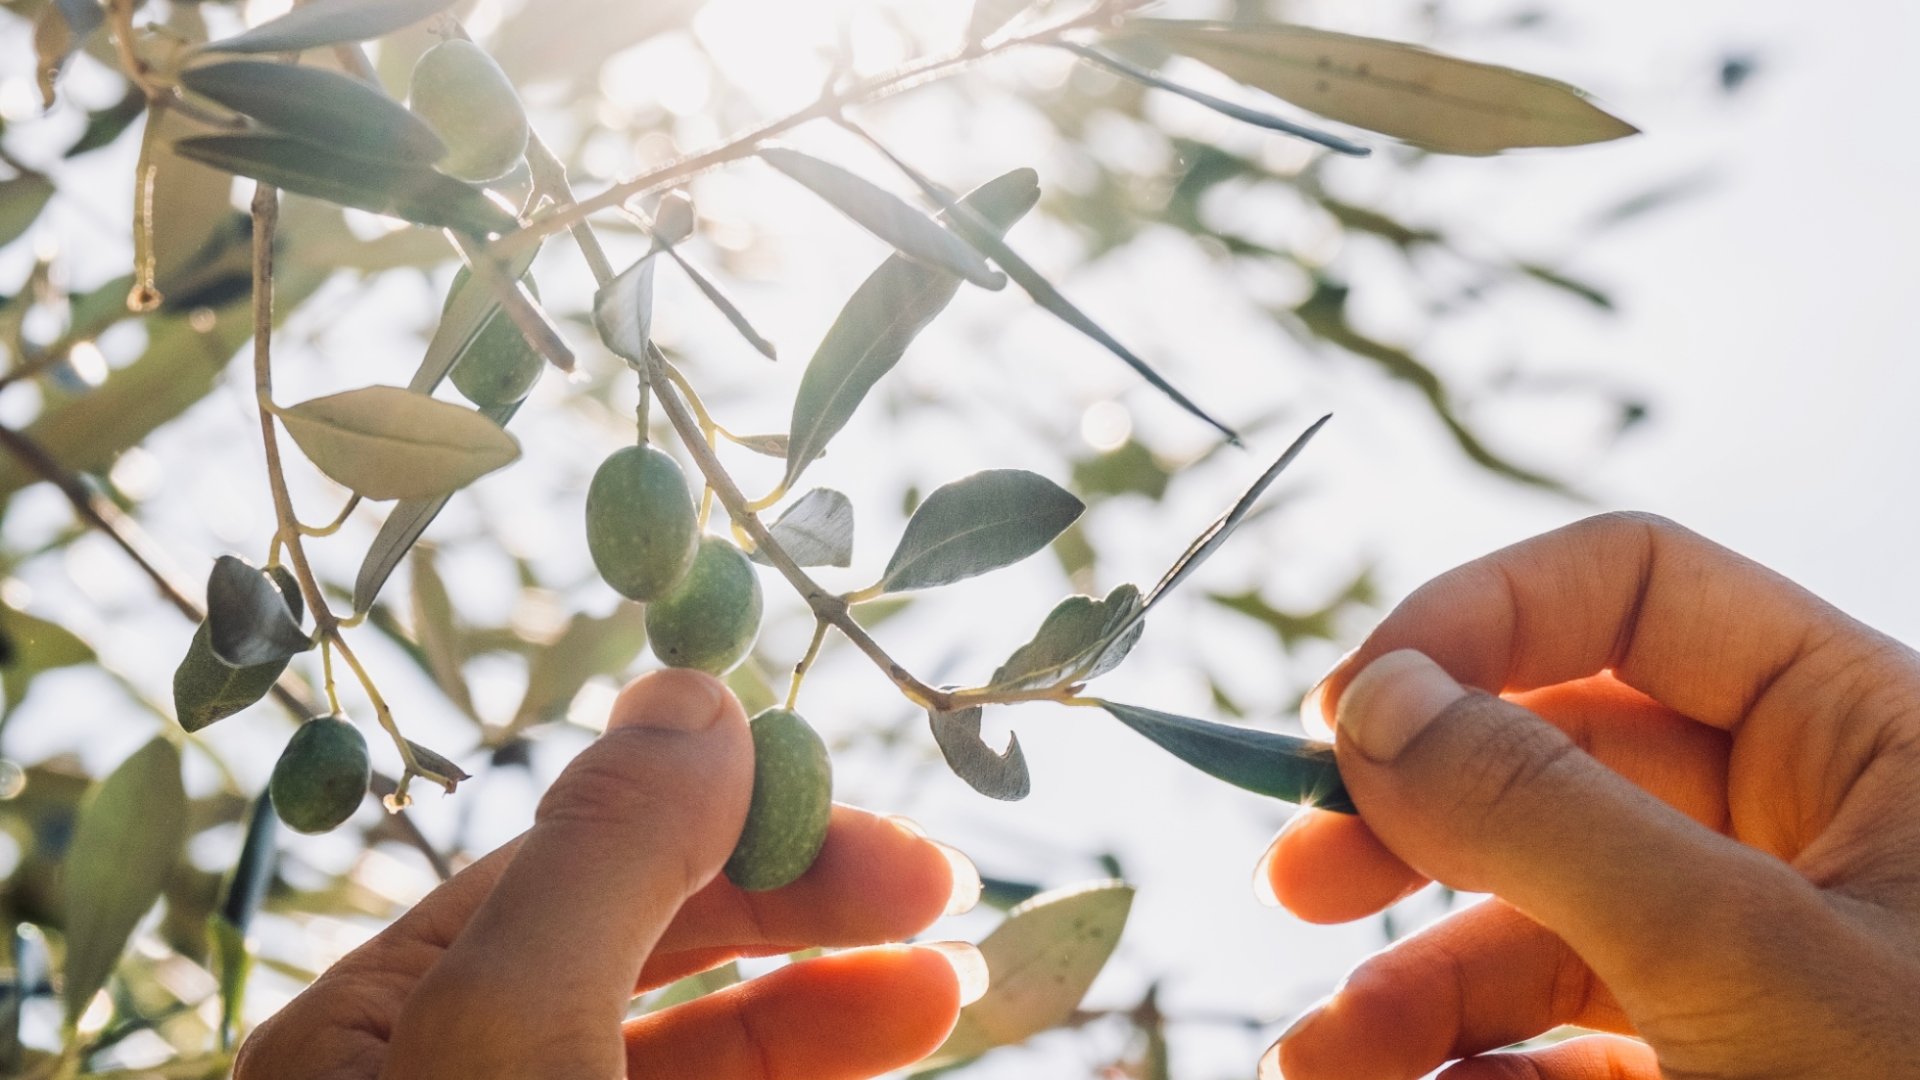 Partecipa alla raccolta e spremitura delle olive nel nostro oliveto a Volterra.